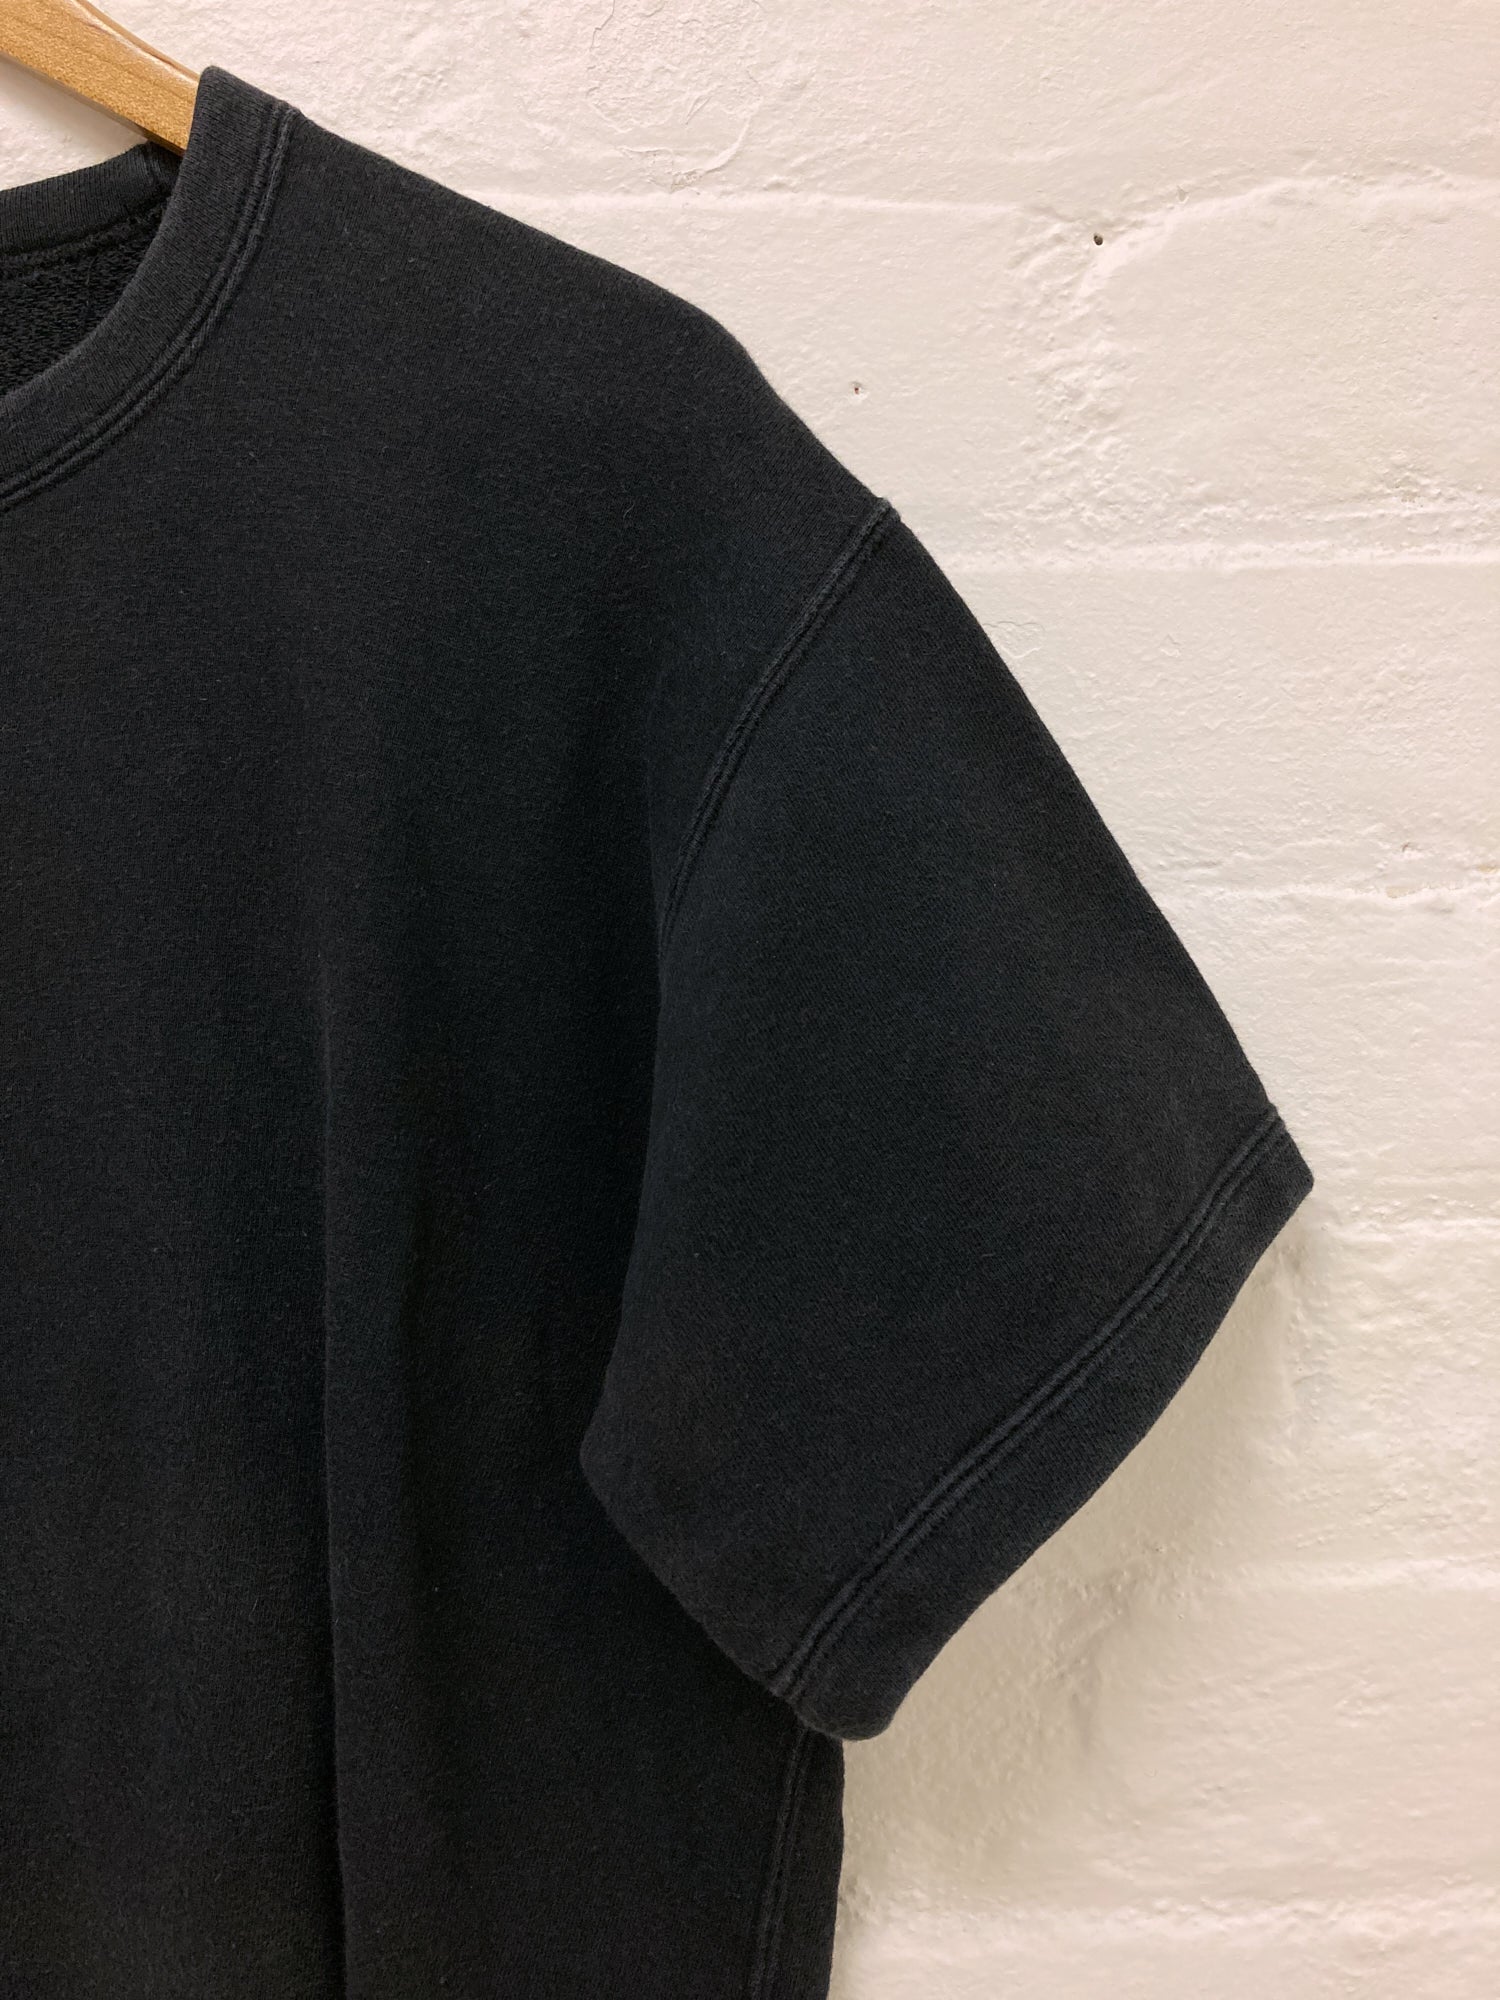 Tricot Comme des Garcons 1980s dark navy cotton short sleeve sweatshirt